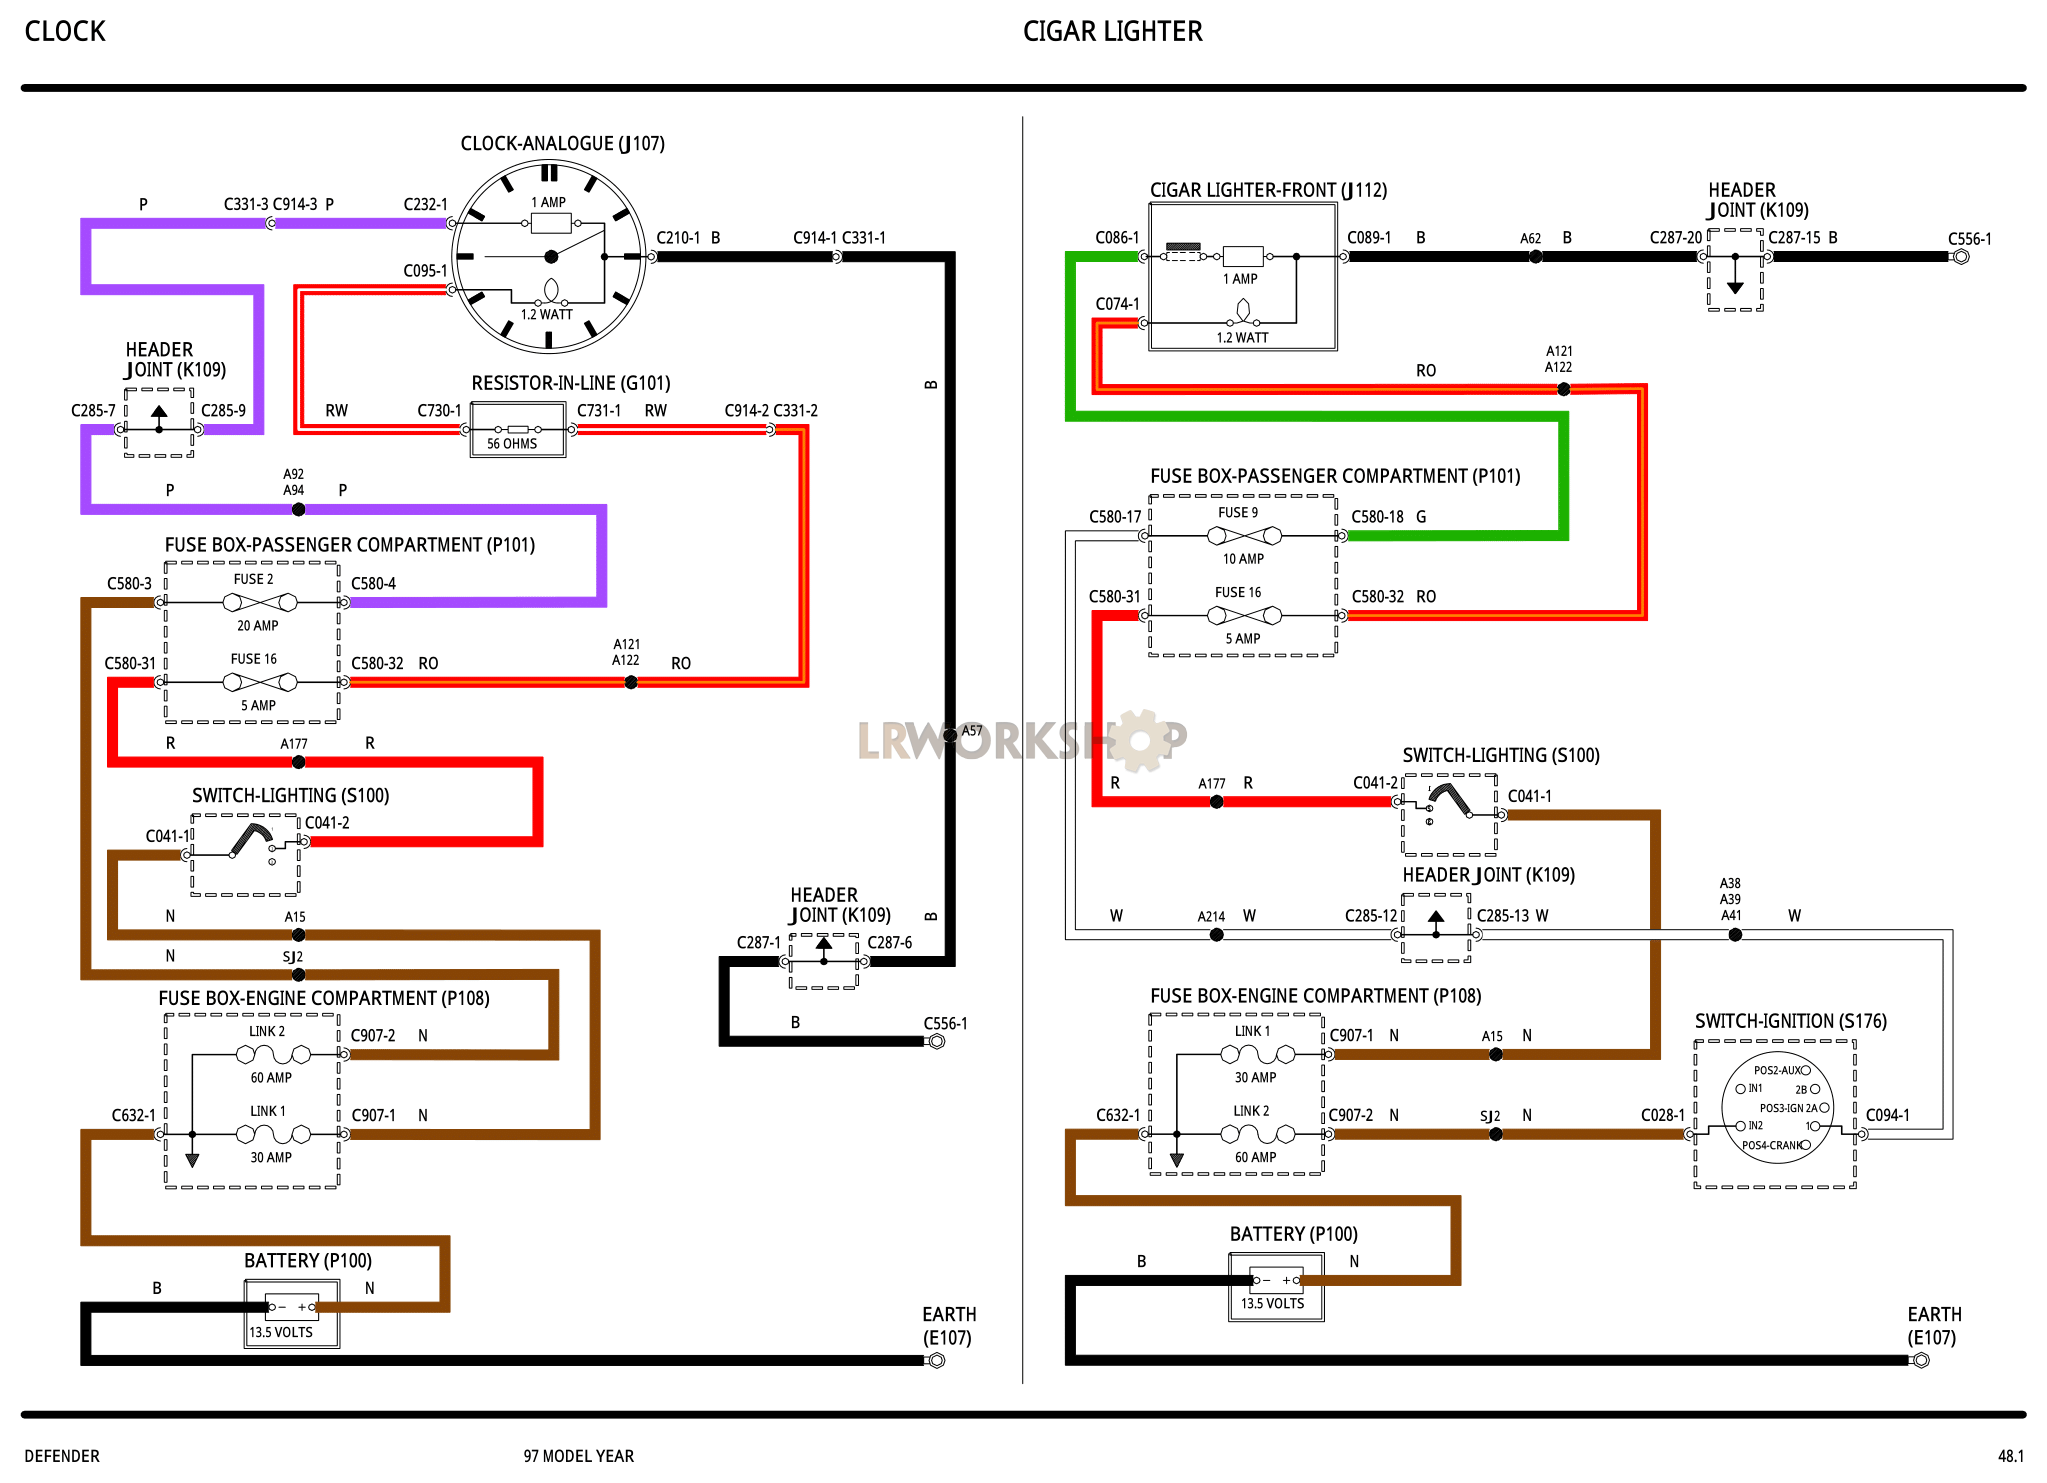 Clock/Cigar Lighter Part Diagram